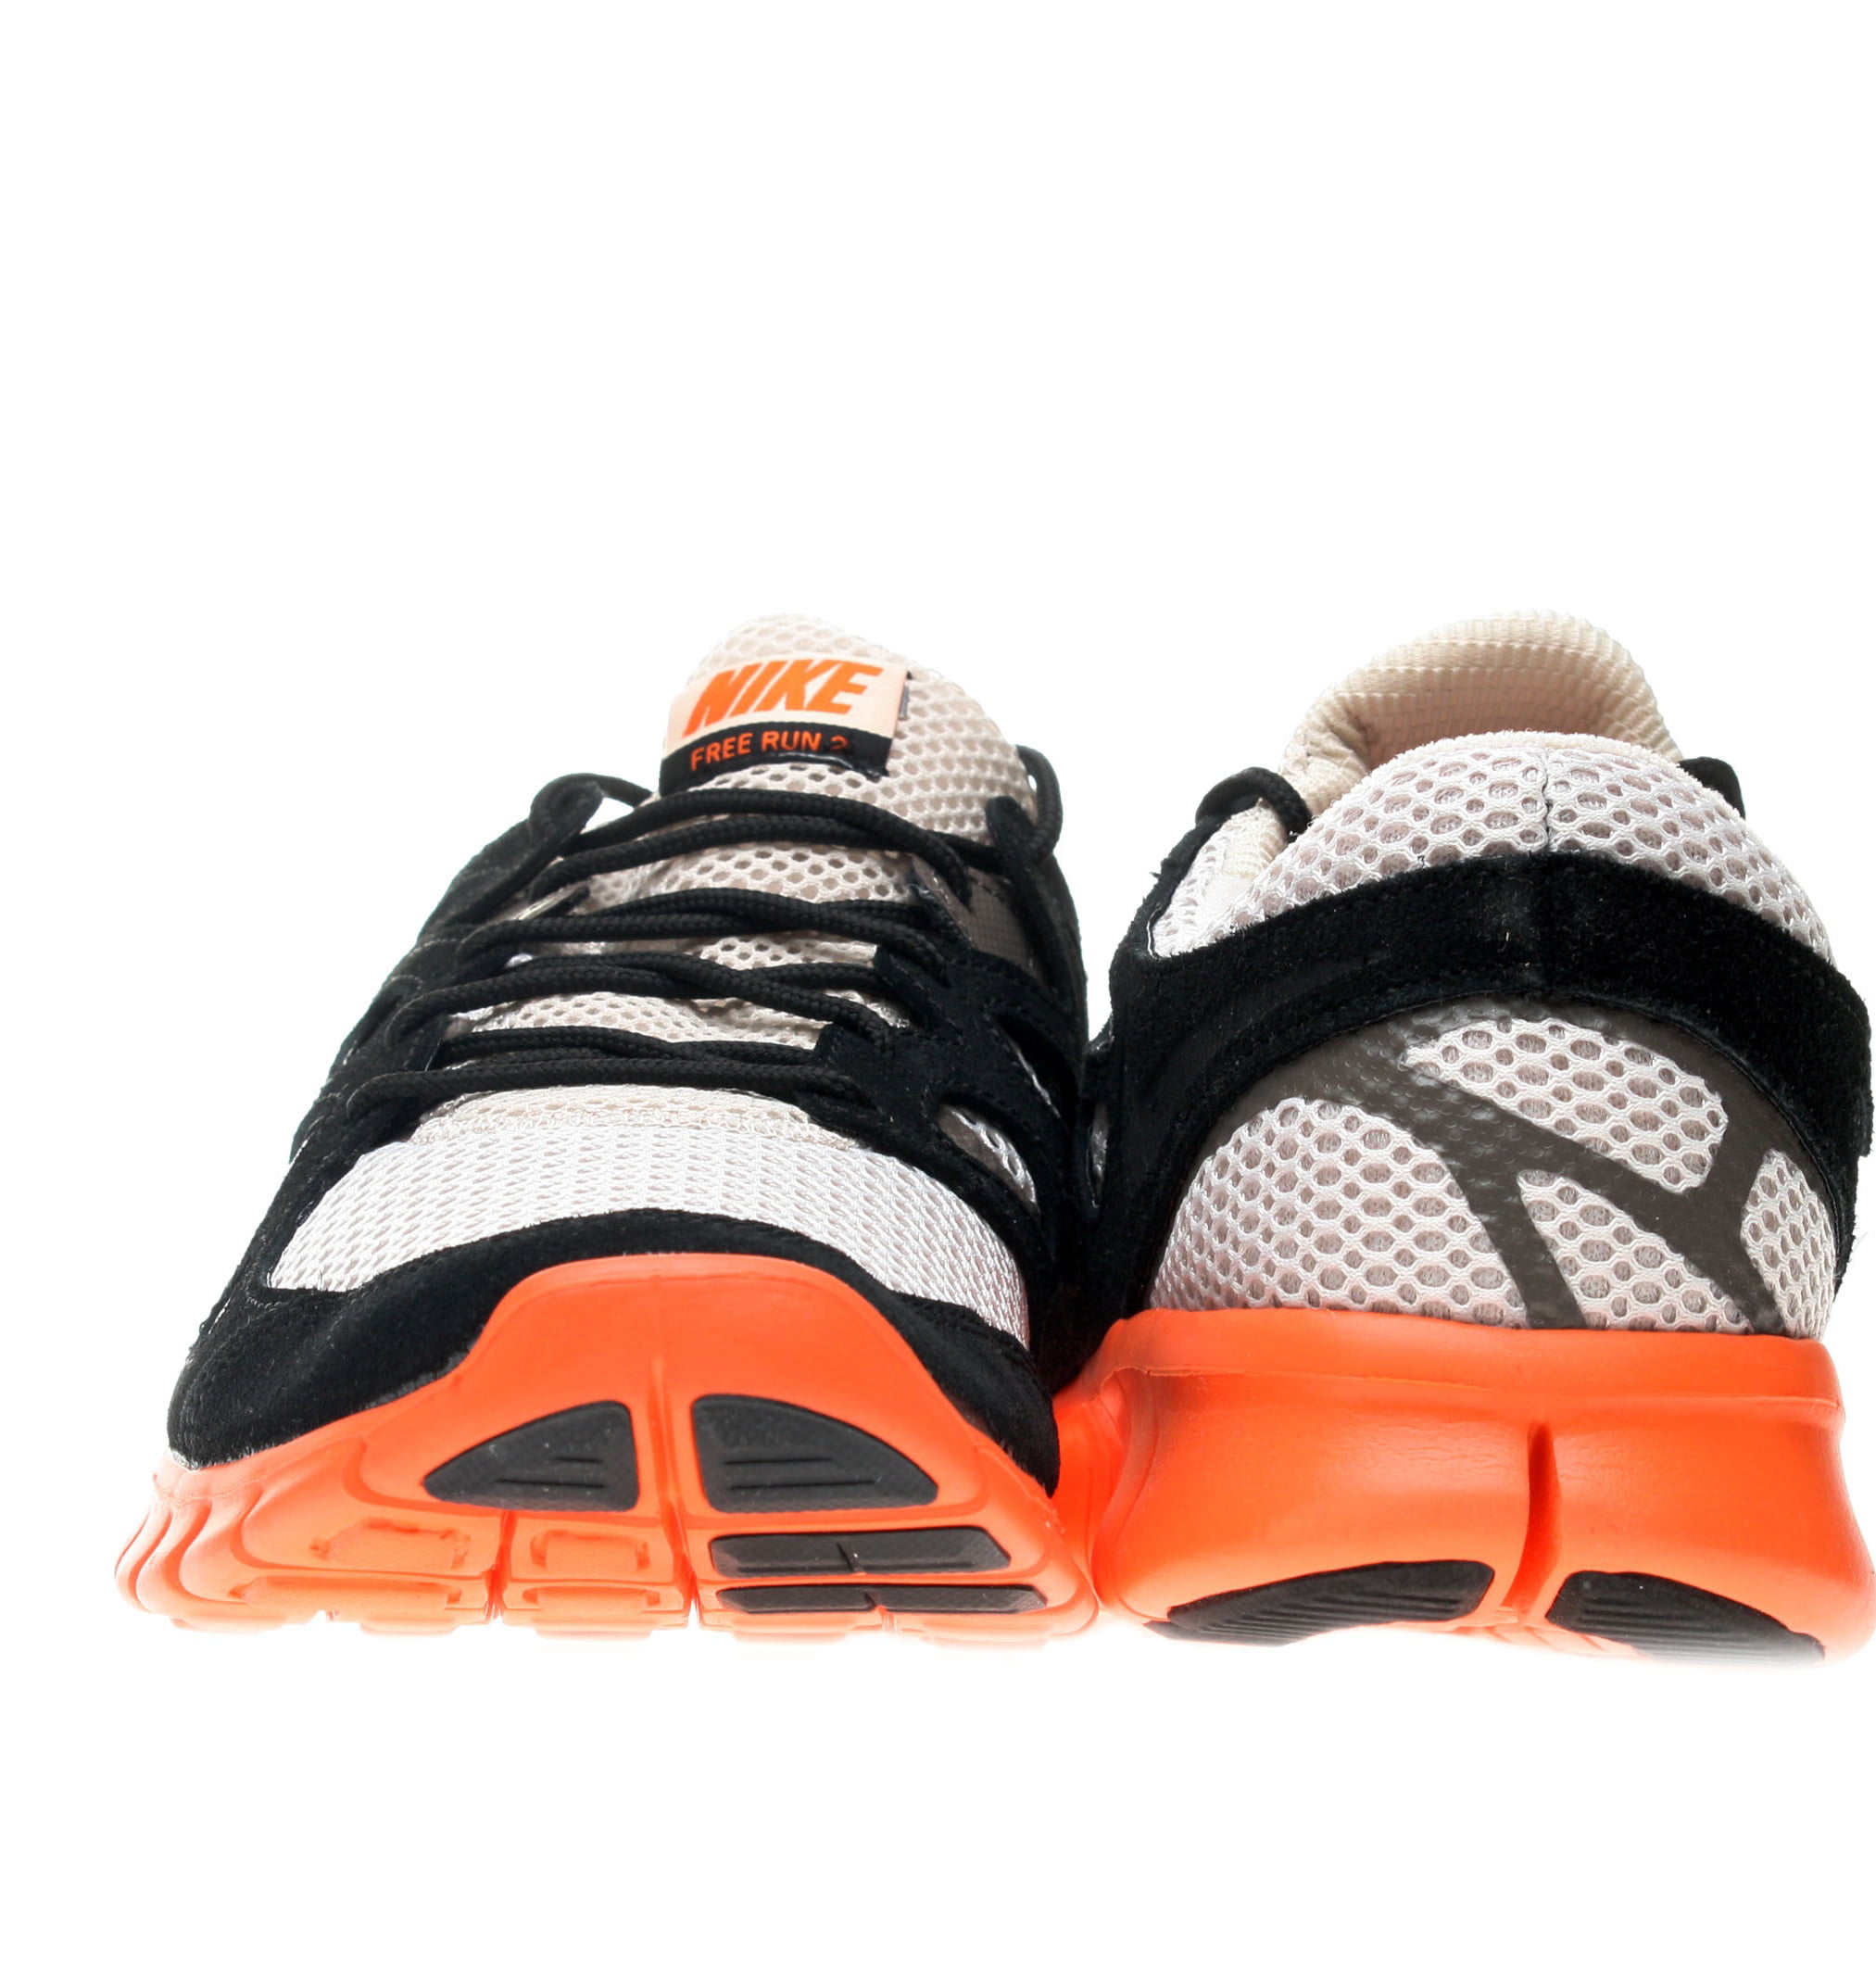 Het is goedkoop Aannames, aannames. Raad eens Maxim Nike Free Run+ 2 EXT Men's Running Shoes Size 8 - Walmart.com